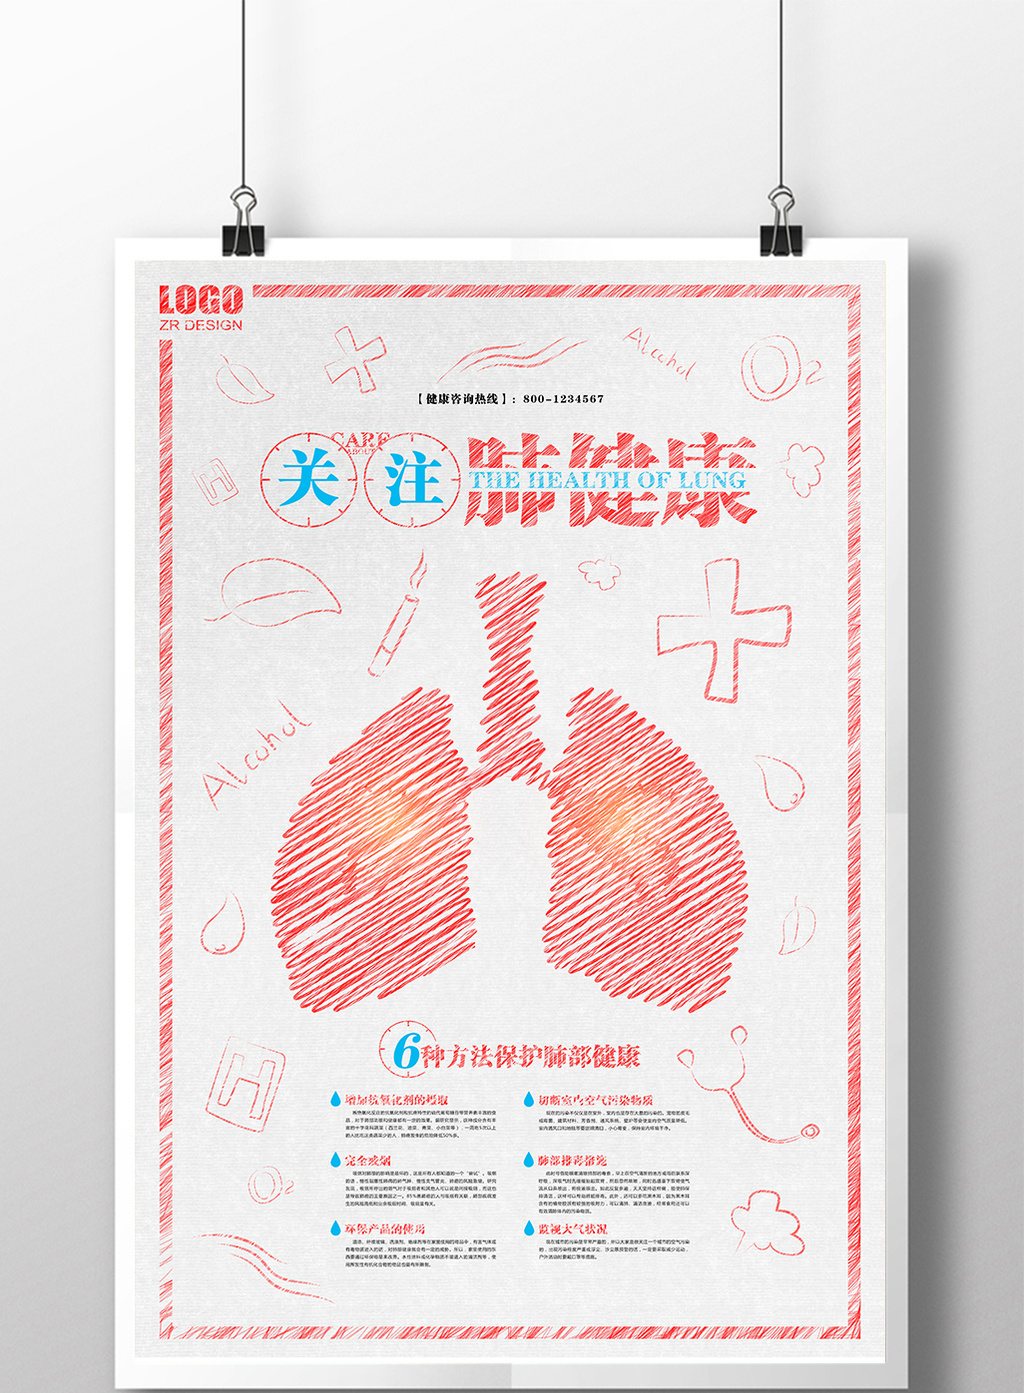 创意涂鸦医疗关注肺健康海报设计